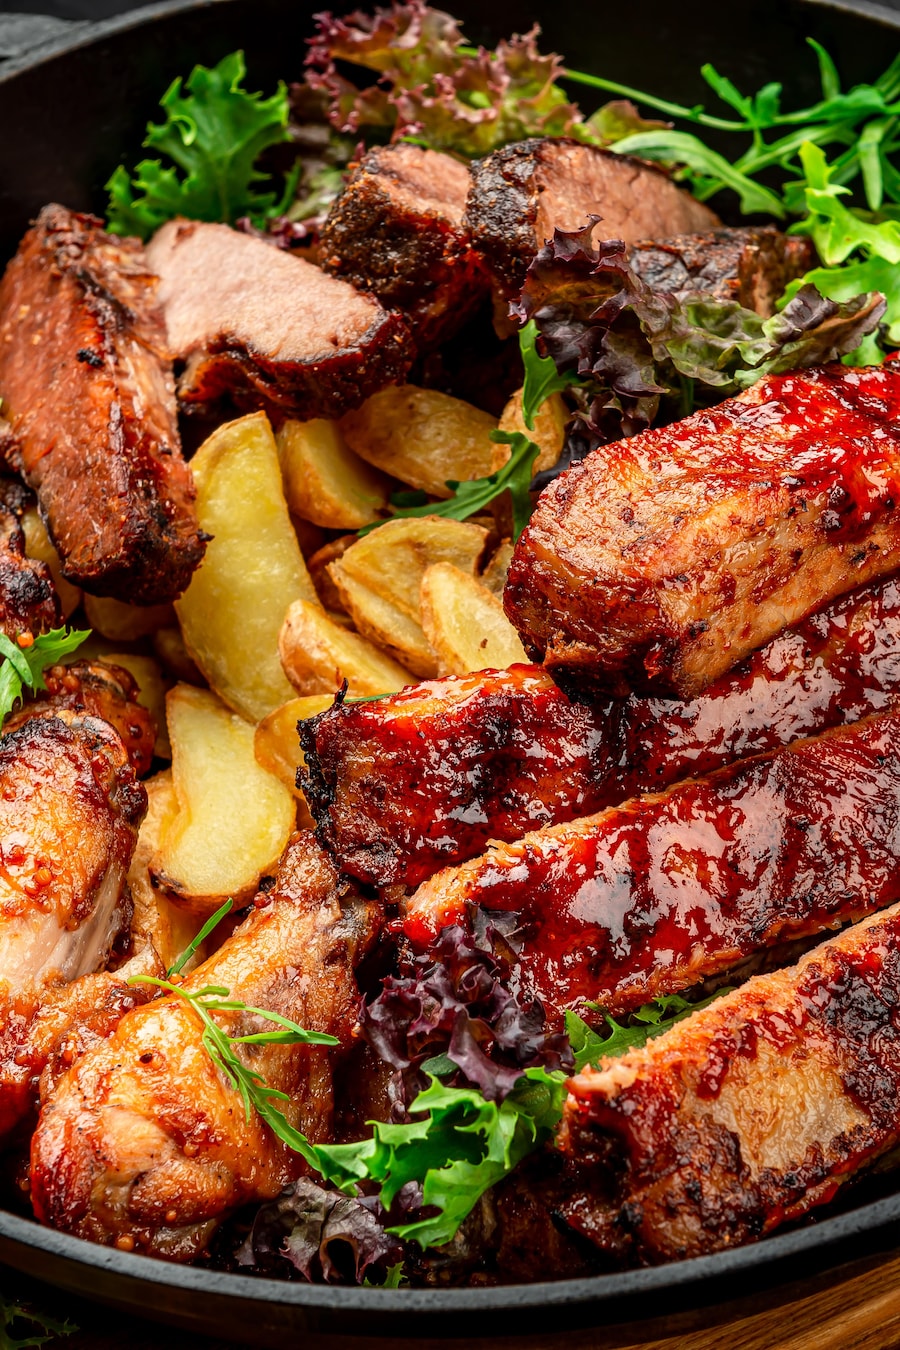 Un plat contenant des pommes de terres à la portugaise, des pilons de poulet et des morceaux d'agneau. La viande est couverte de sauce BBQ aux mangues.